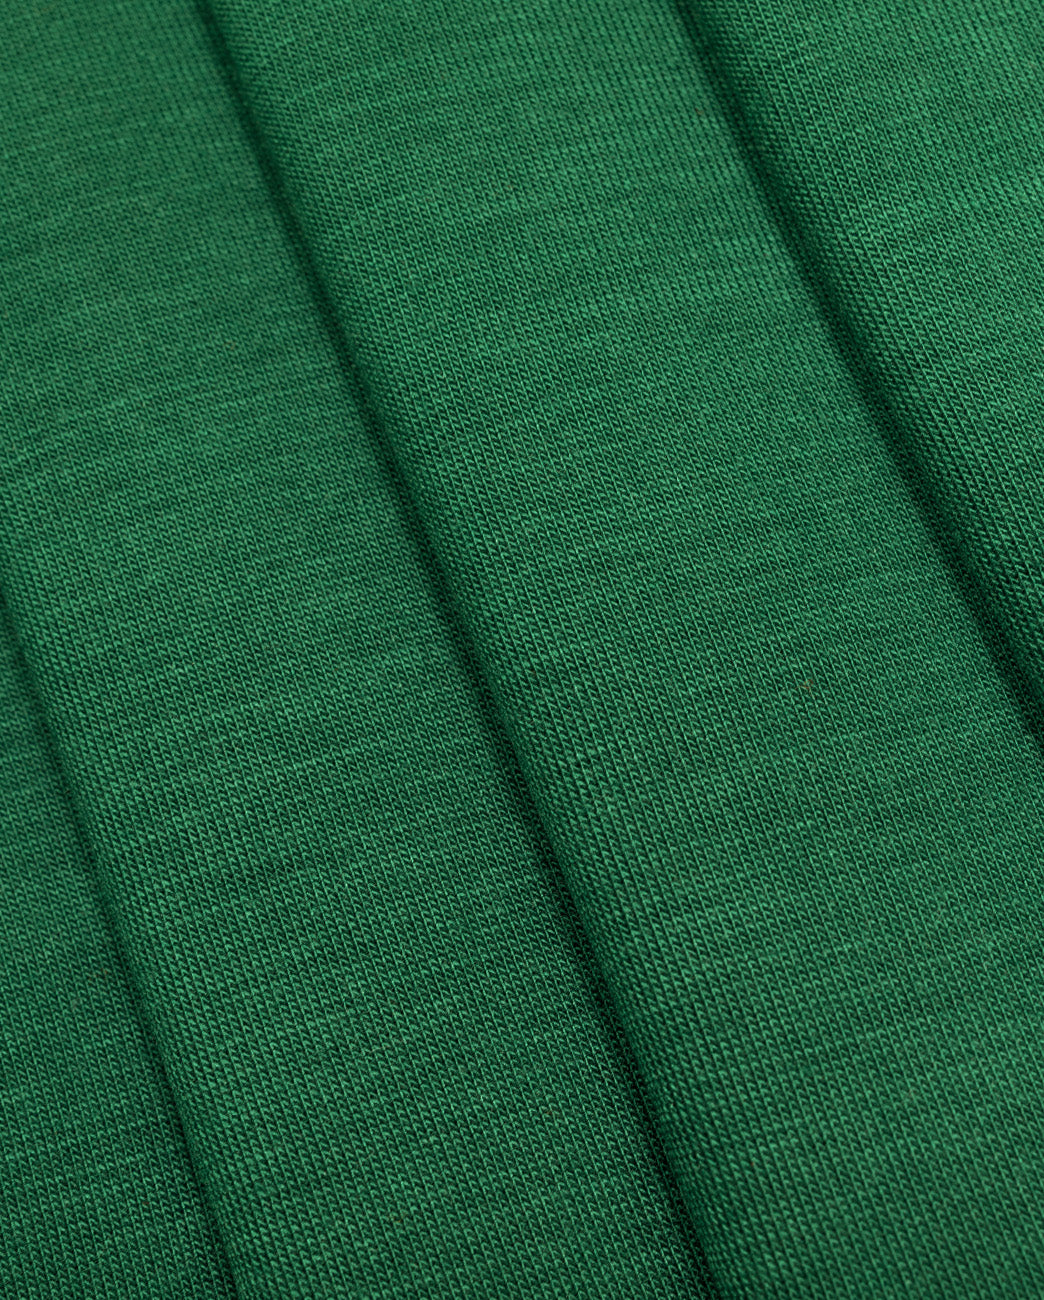 Jersey Light - pine green